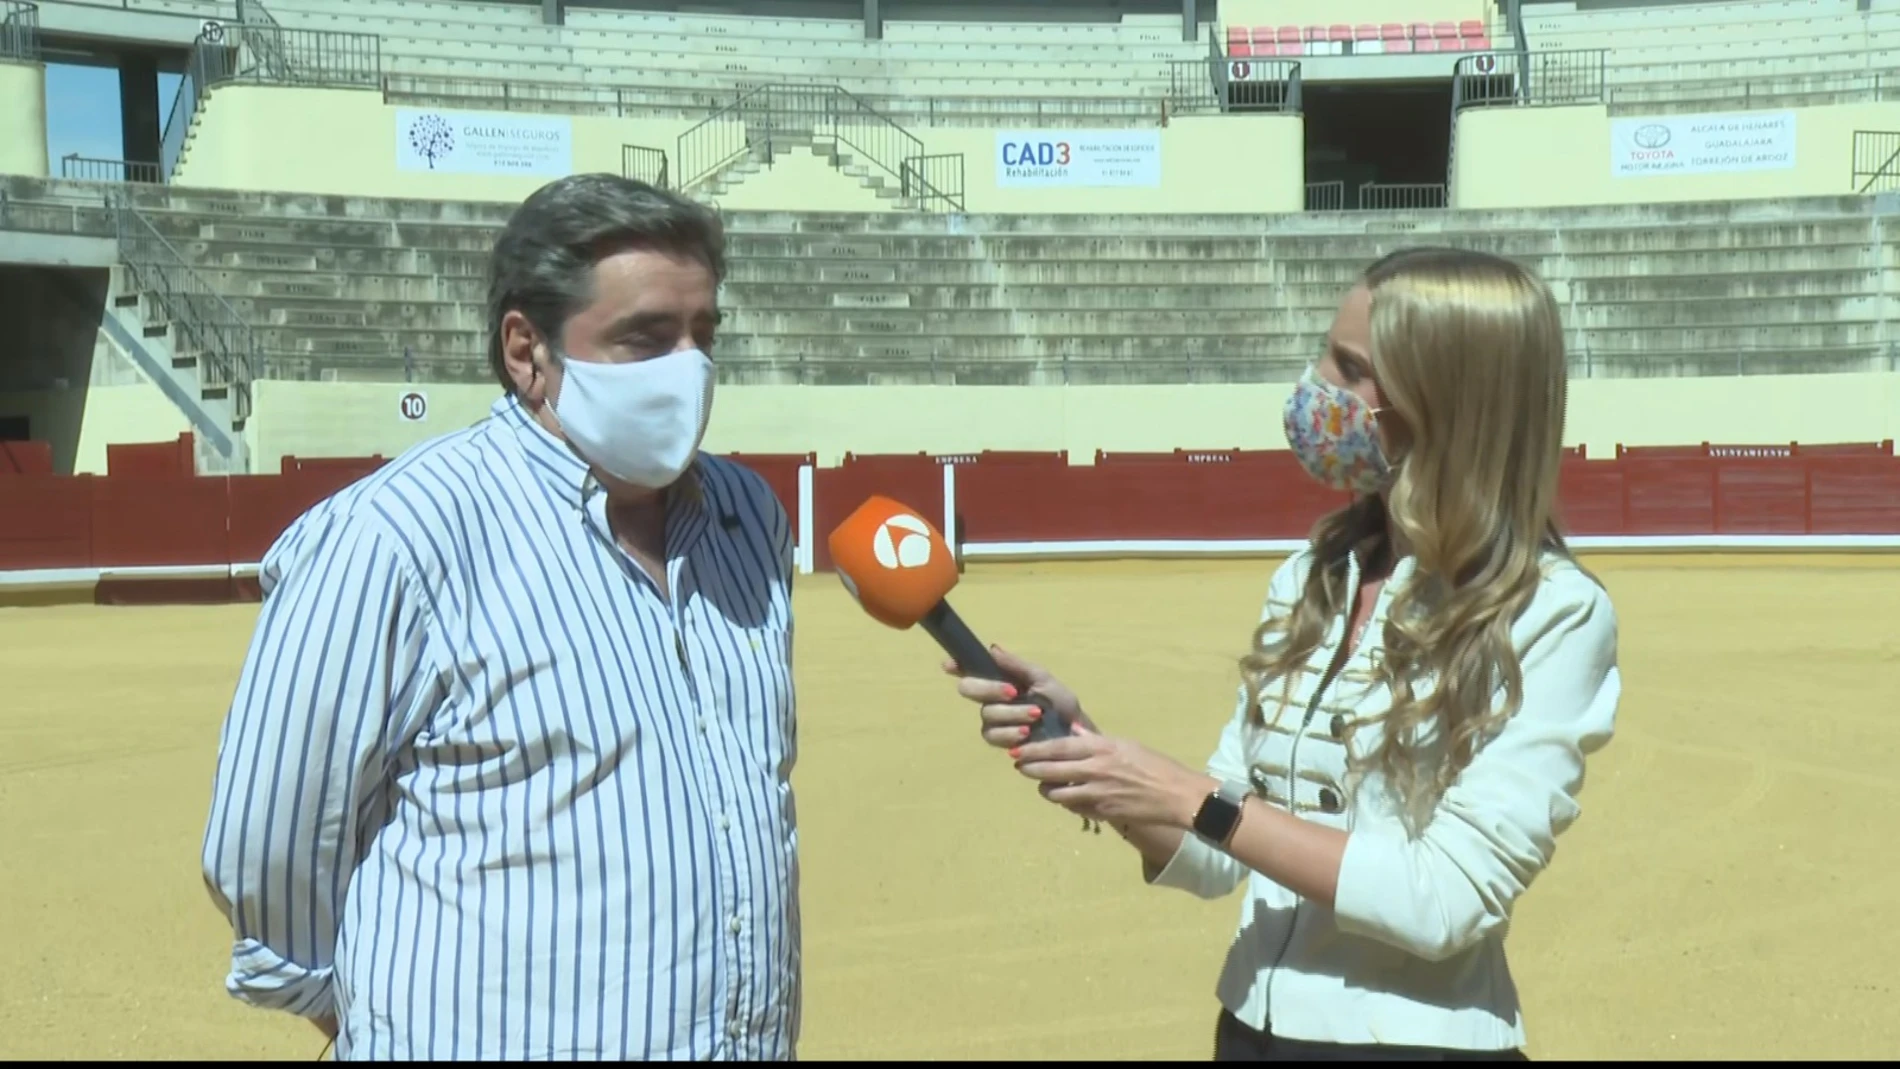 El promotor de la corrida de toros, tras suspenderse la feria taurina en Alcalá: “Es una injusticia y una presunta ilegalidad"